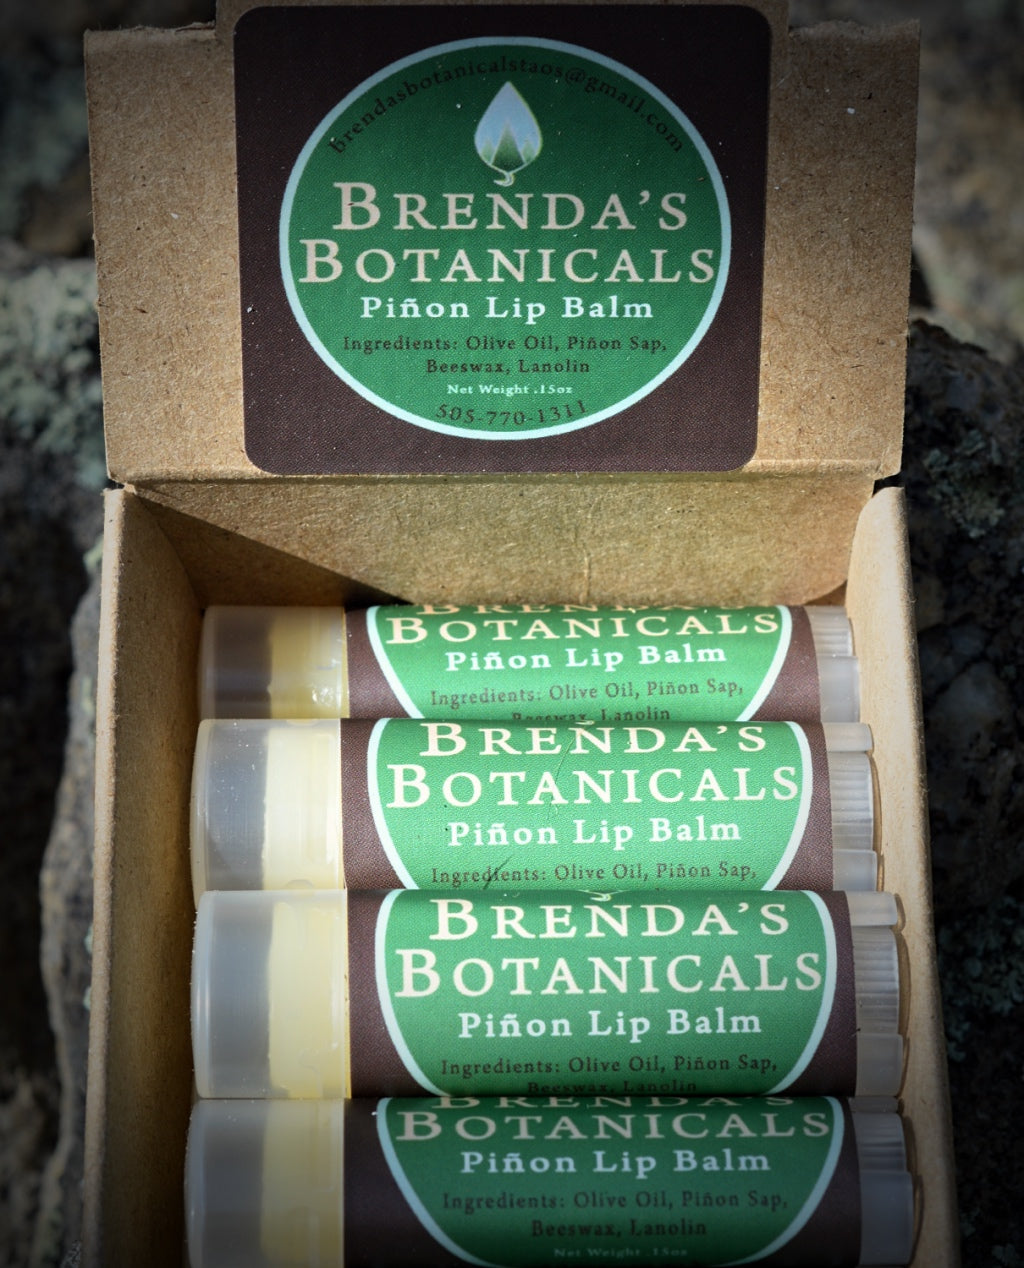 Brenda's Botanicals Piñon Lip Balm - Original